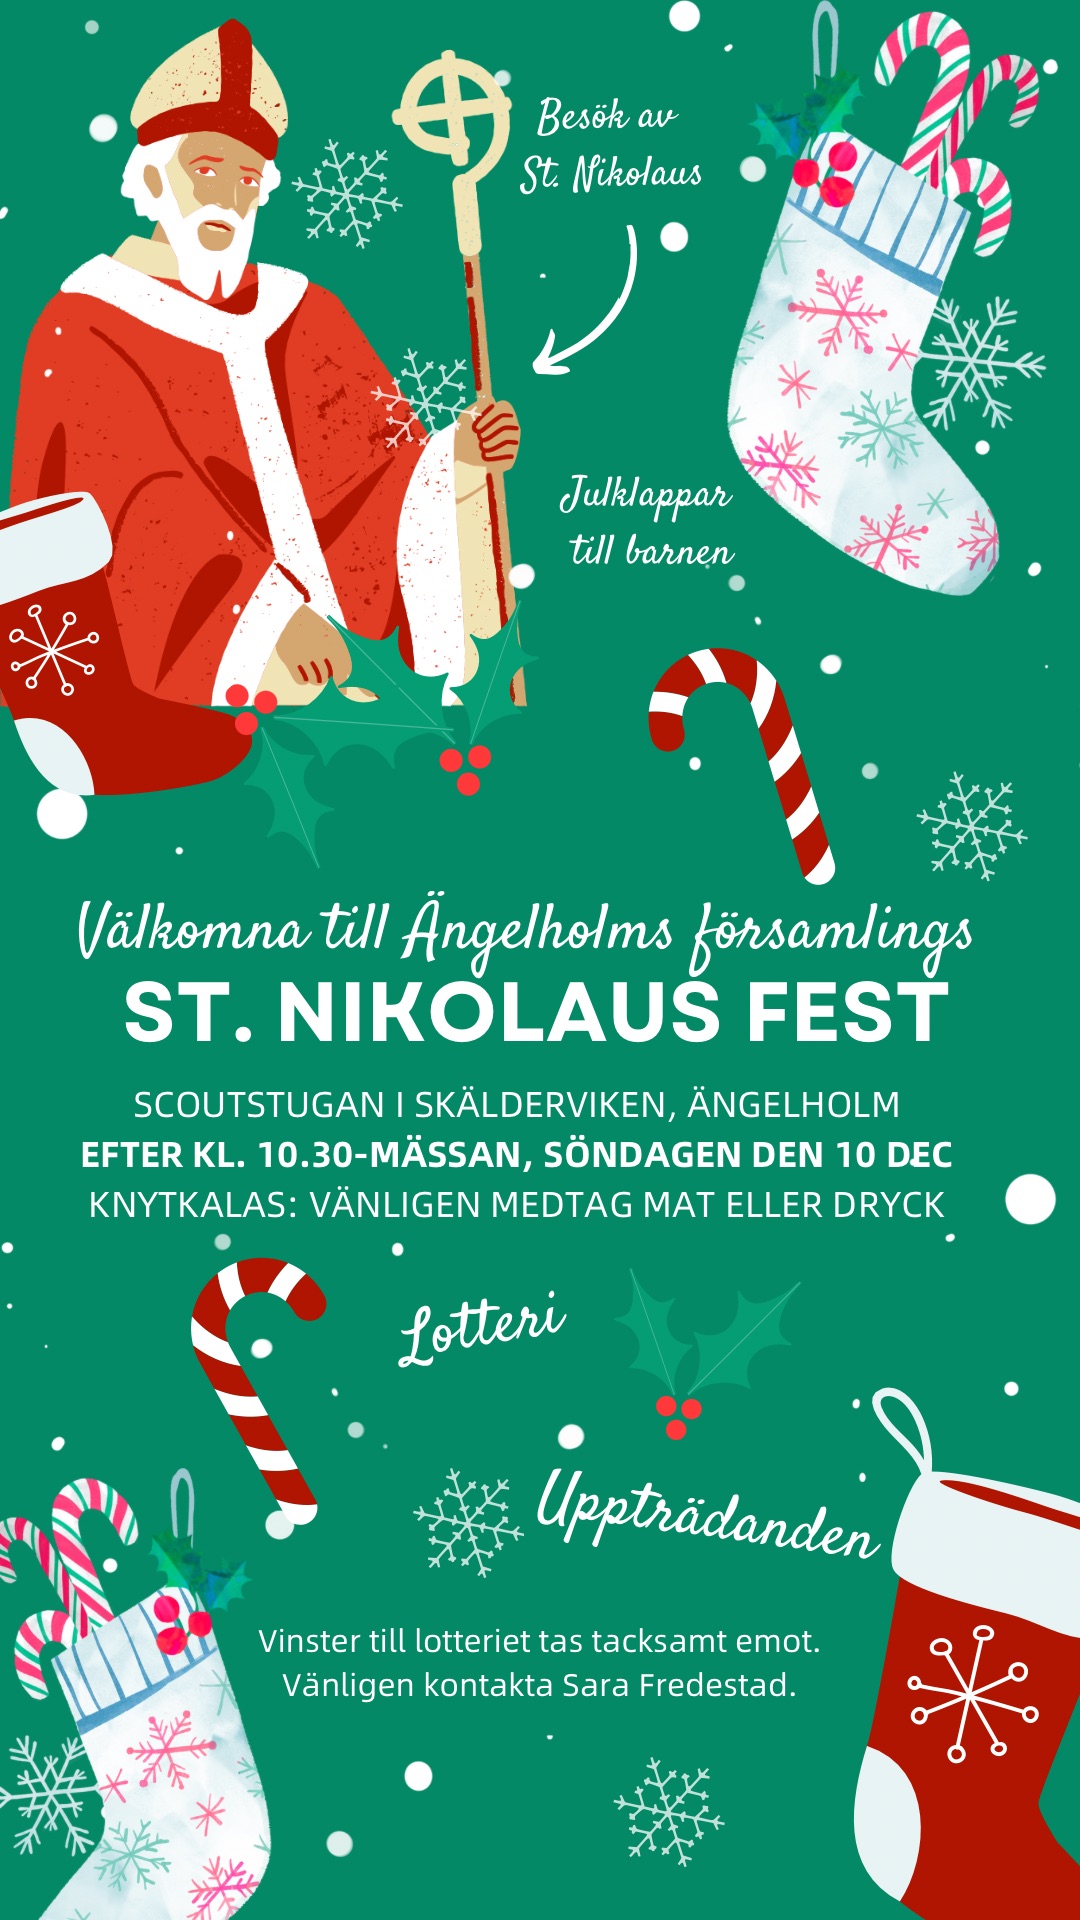 St. Nikolaus Fest